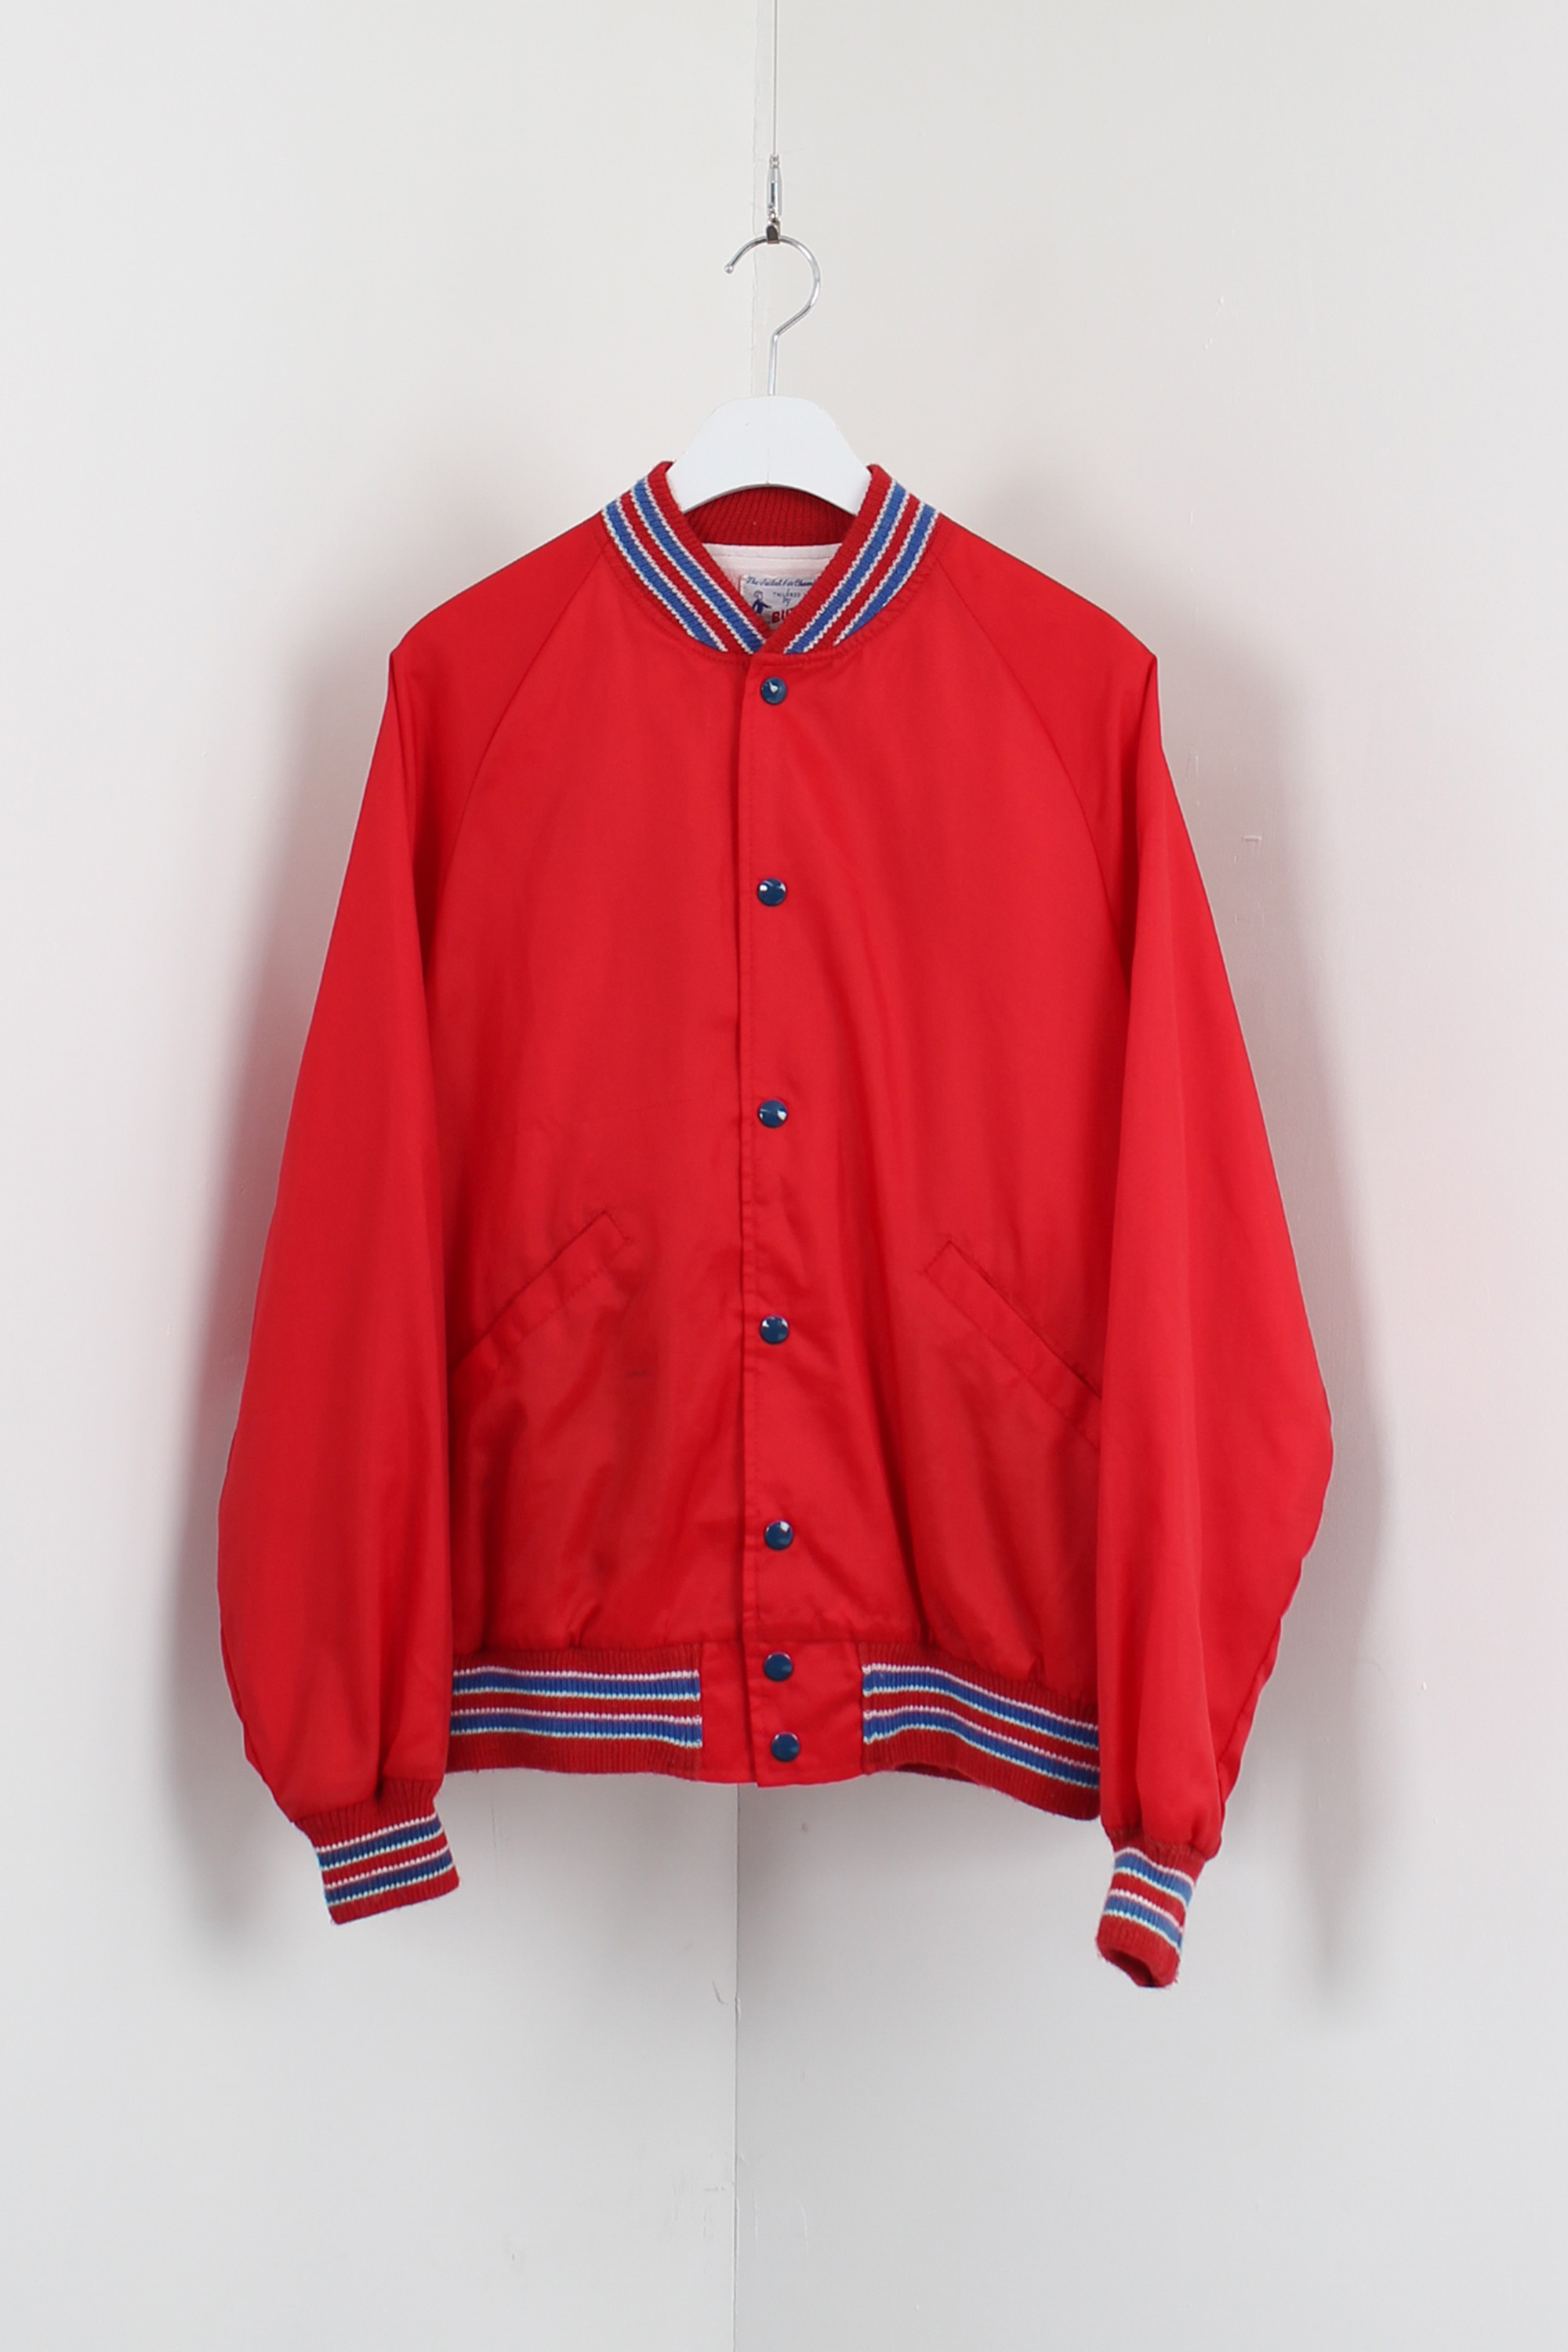 80s BUTWIN varsity jacket